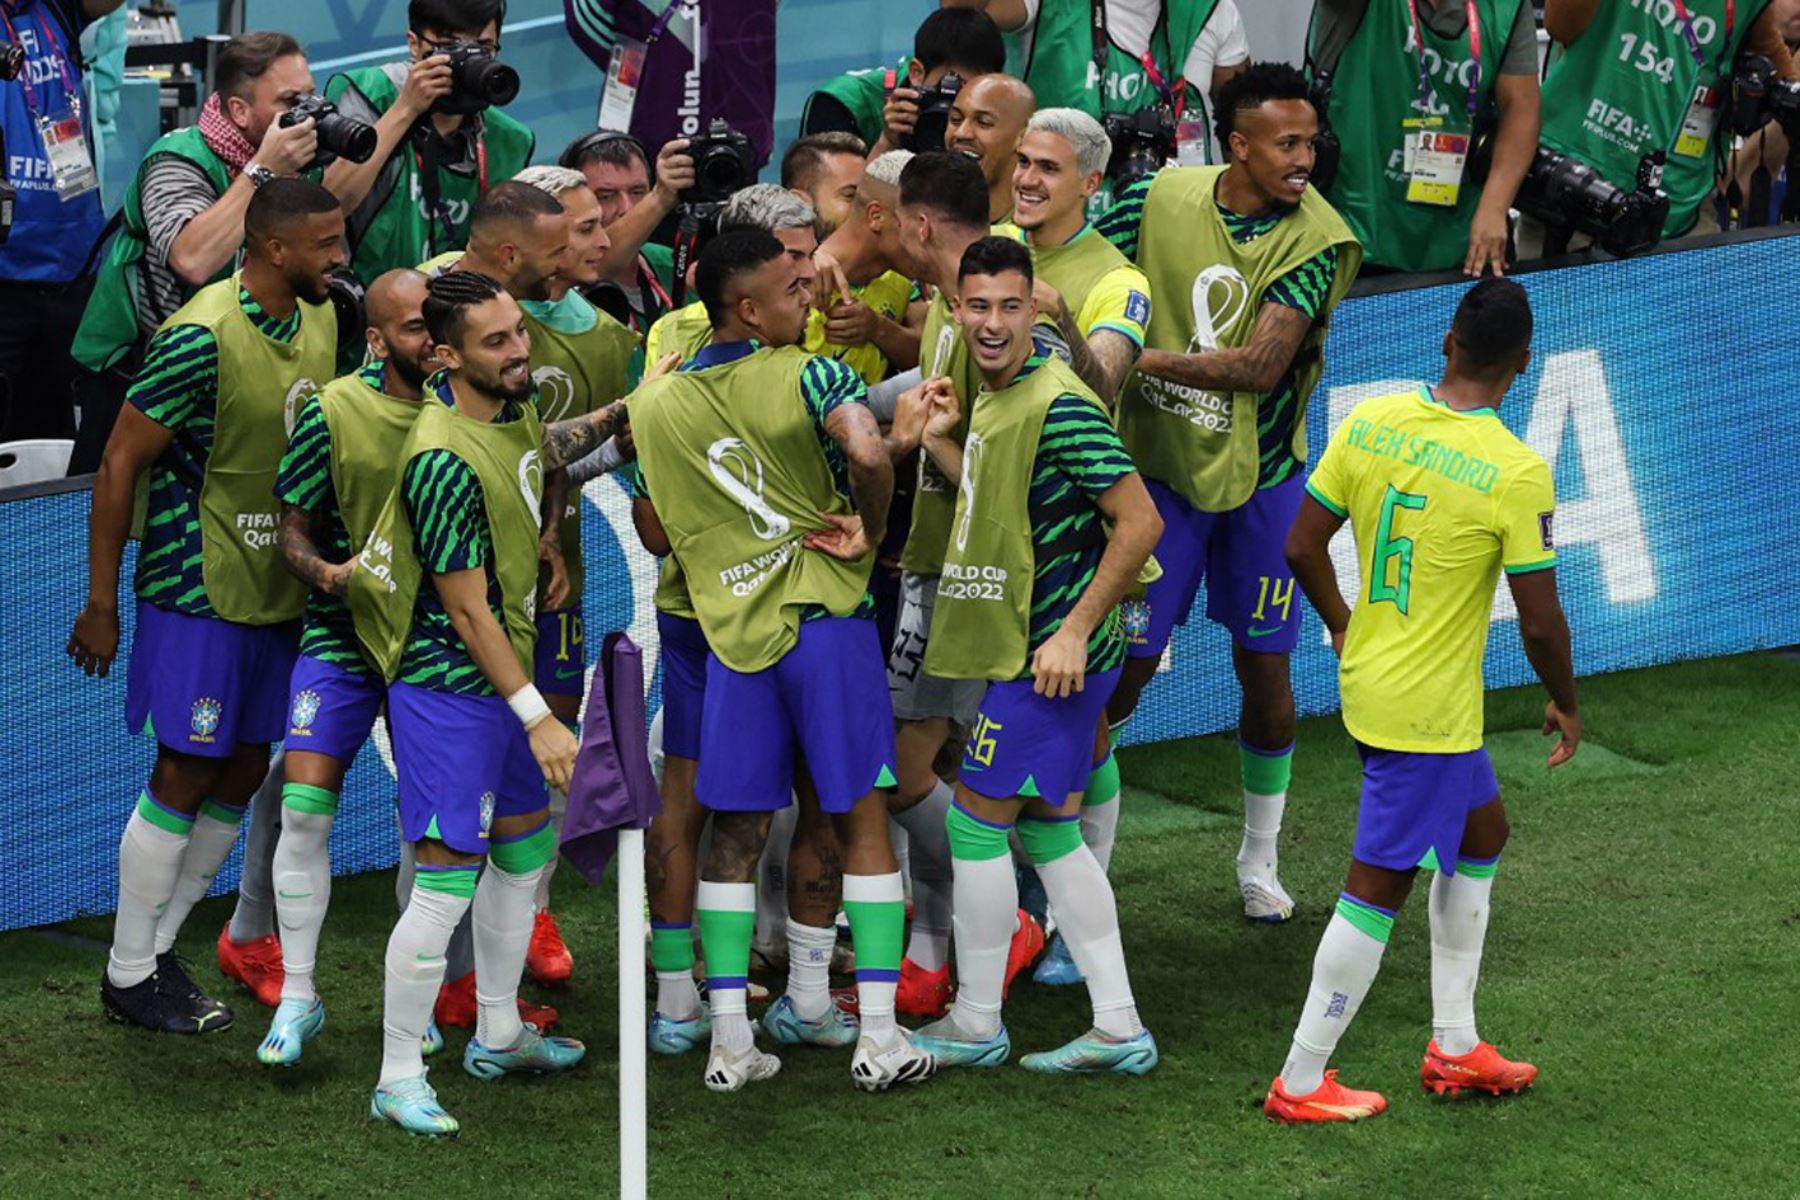 El delantero brasileño Richarlison (C, cubierto) celebra con sus compañeros de equipo después de anotar el segundo gol de su equipo durante el partido de fútbol del Grupo G de la Copa Mundial Catar 2022 entre Brasil y Serbia en el Estadio Lusail en Lusail, al norte de Doha

Foto:AFP